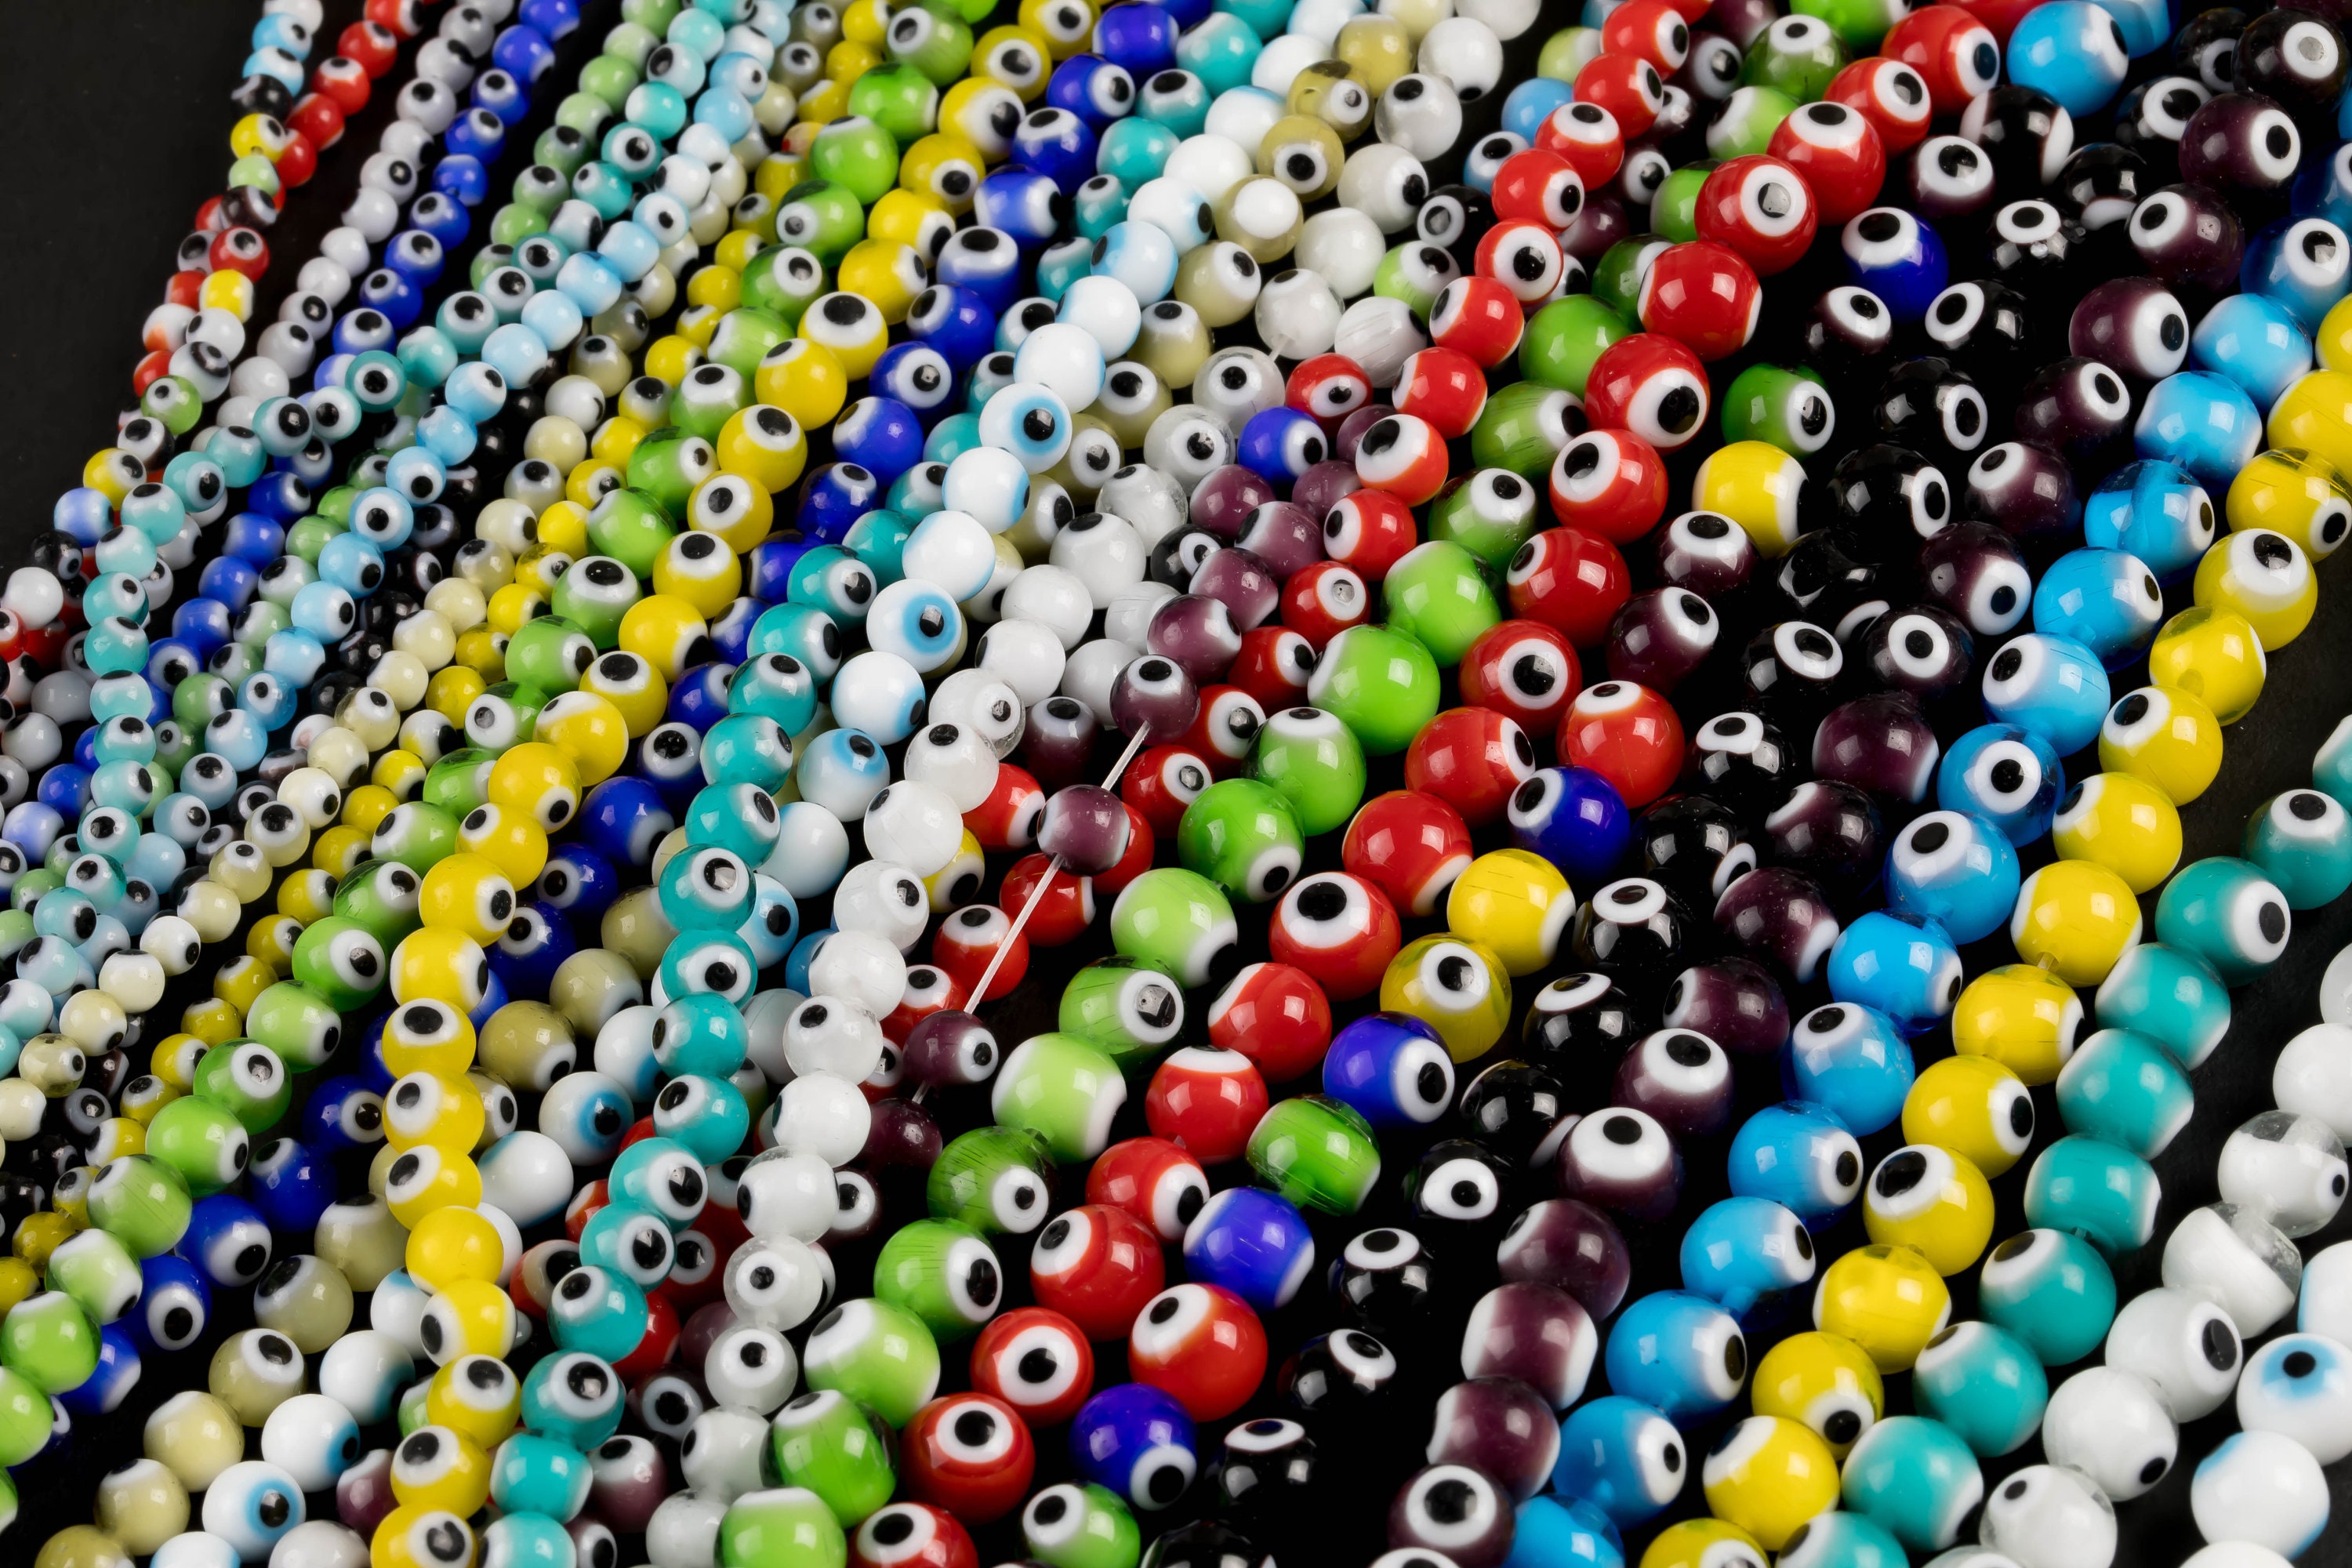 Evil Eye Beads for Jewelry Making?Acrsikr Evil Eye Singapore